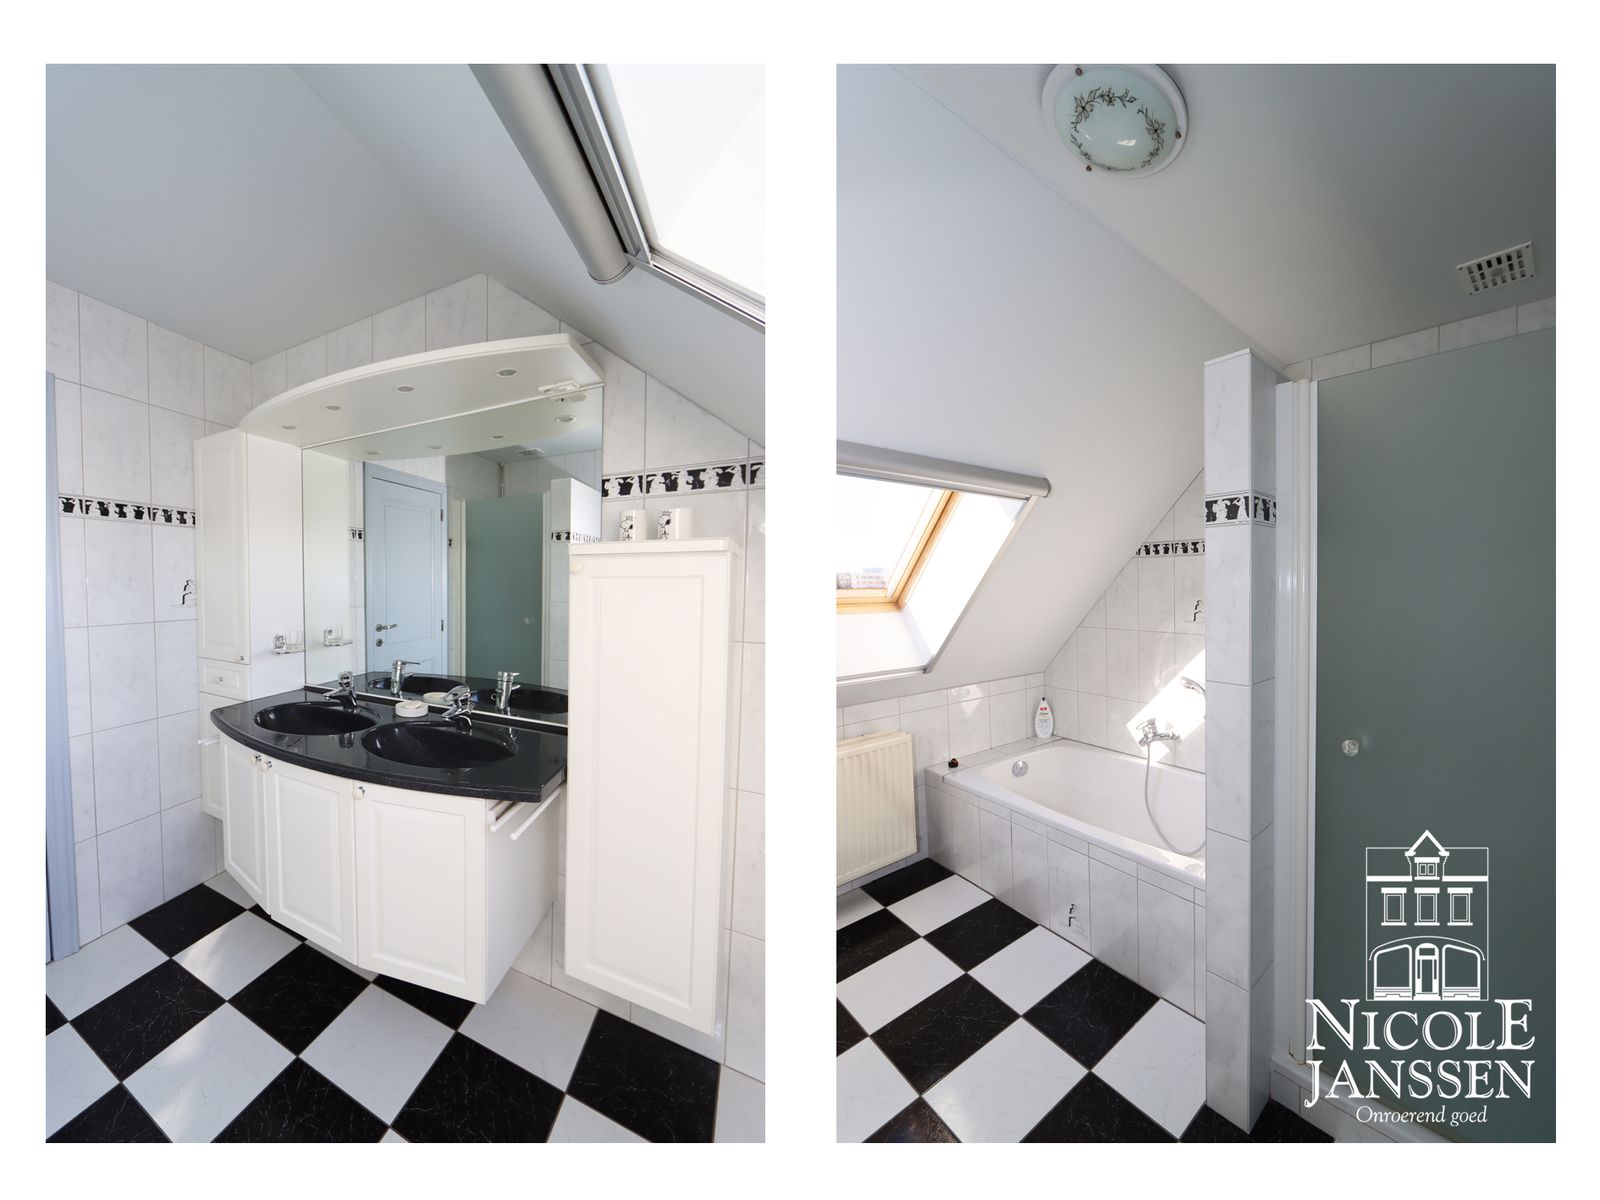 21 Nicole Janssen - huis te koop - H Van Veldekesstraat 17 te Maaseik - badkamer.jpg